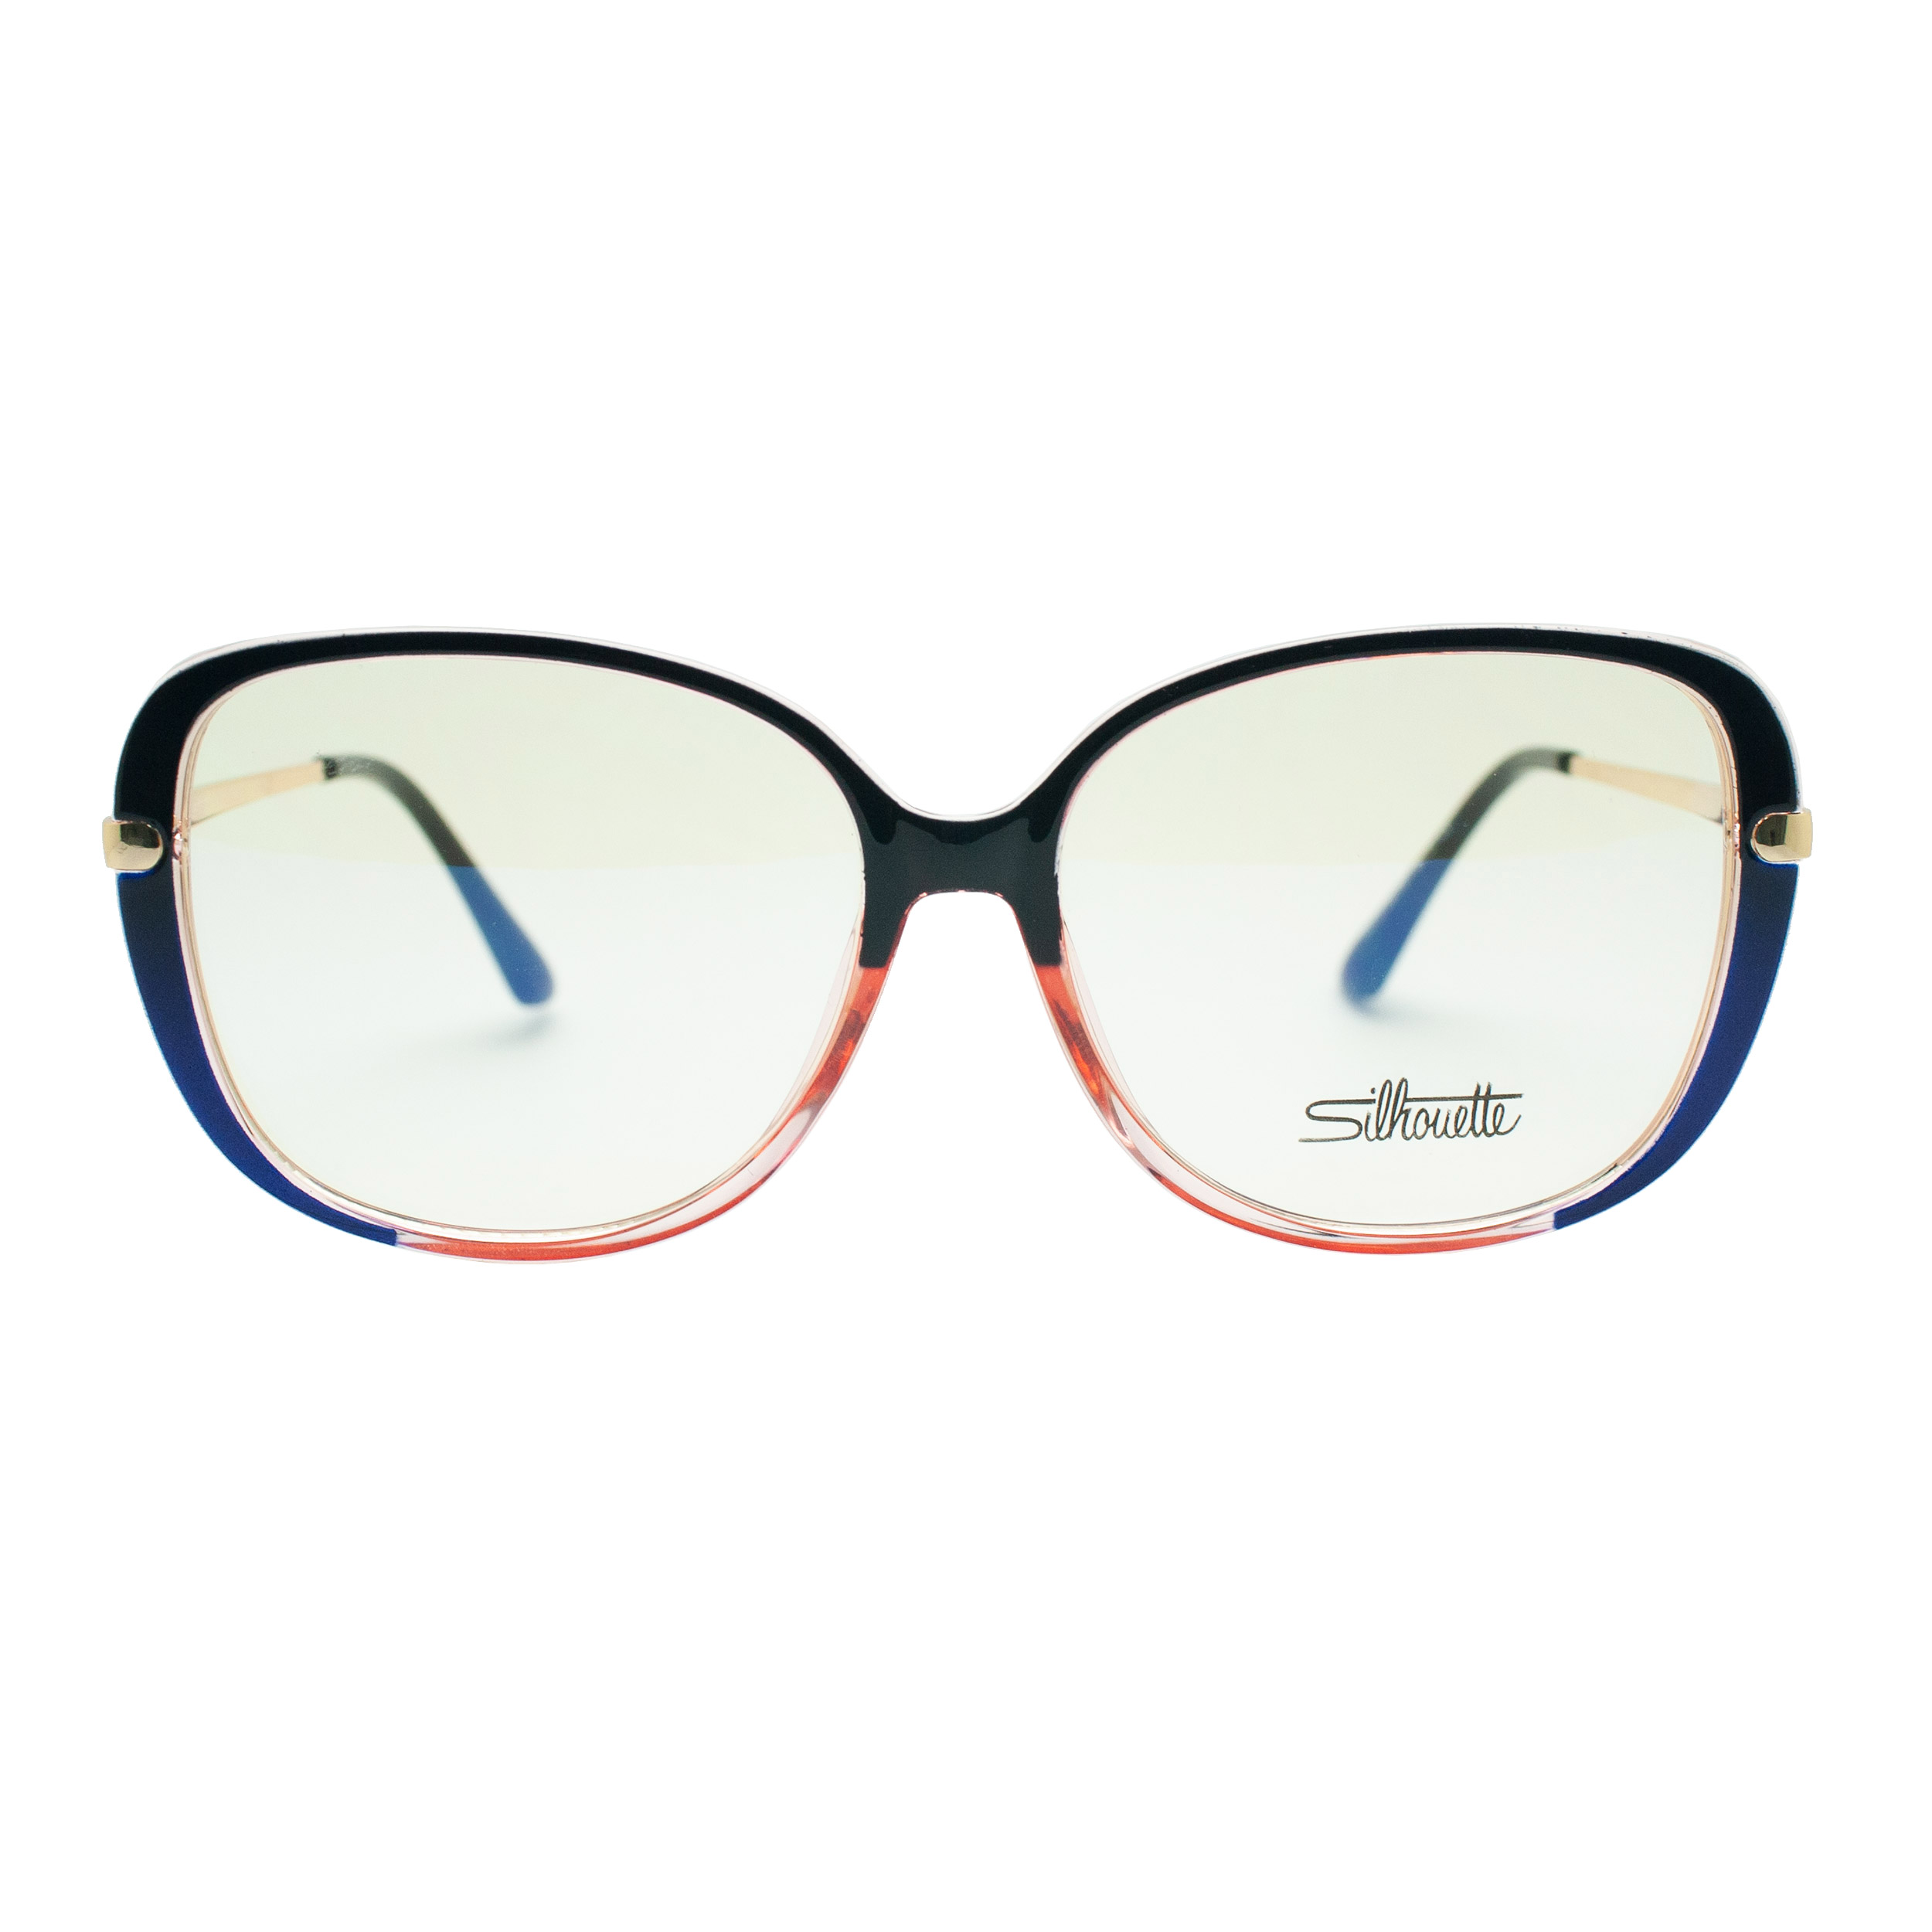 فریم عینک طبی سیلوئت مدل 93312 C1 G -  - 1